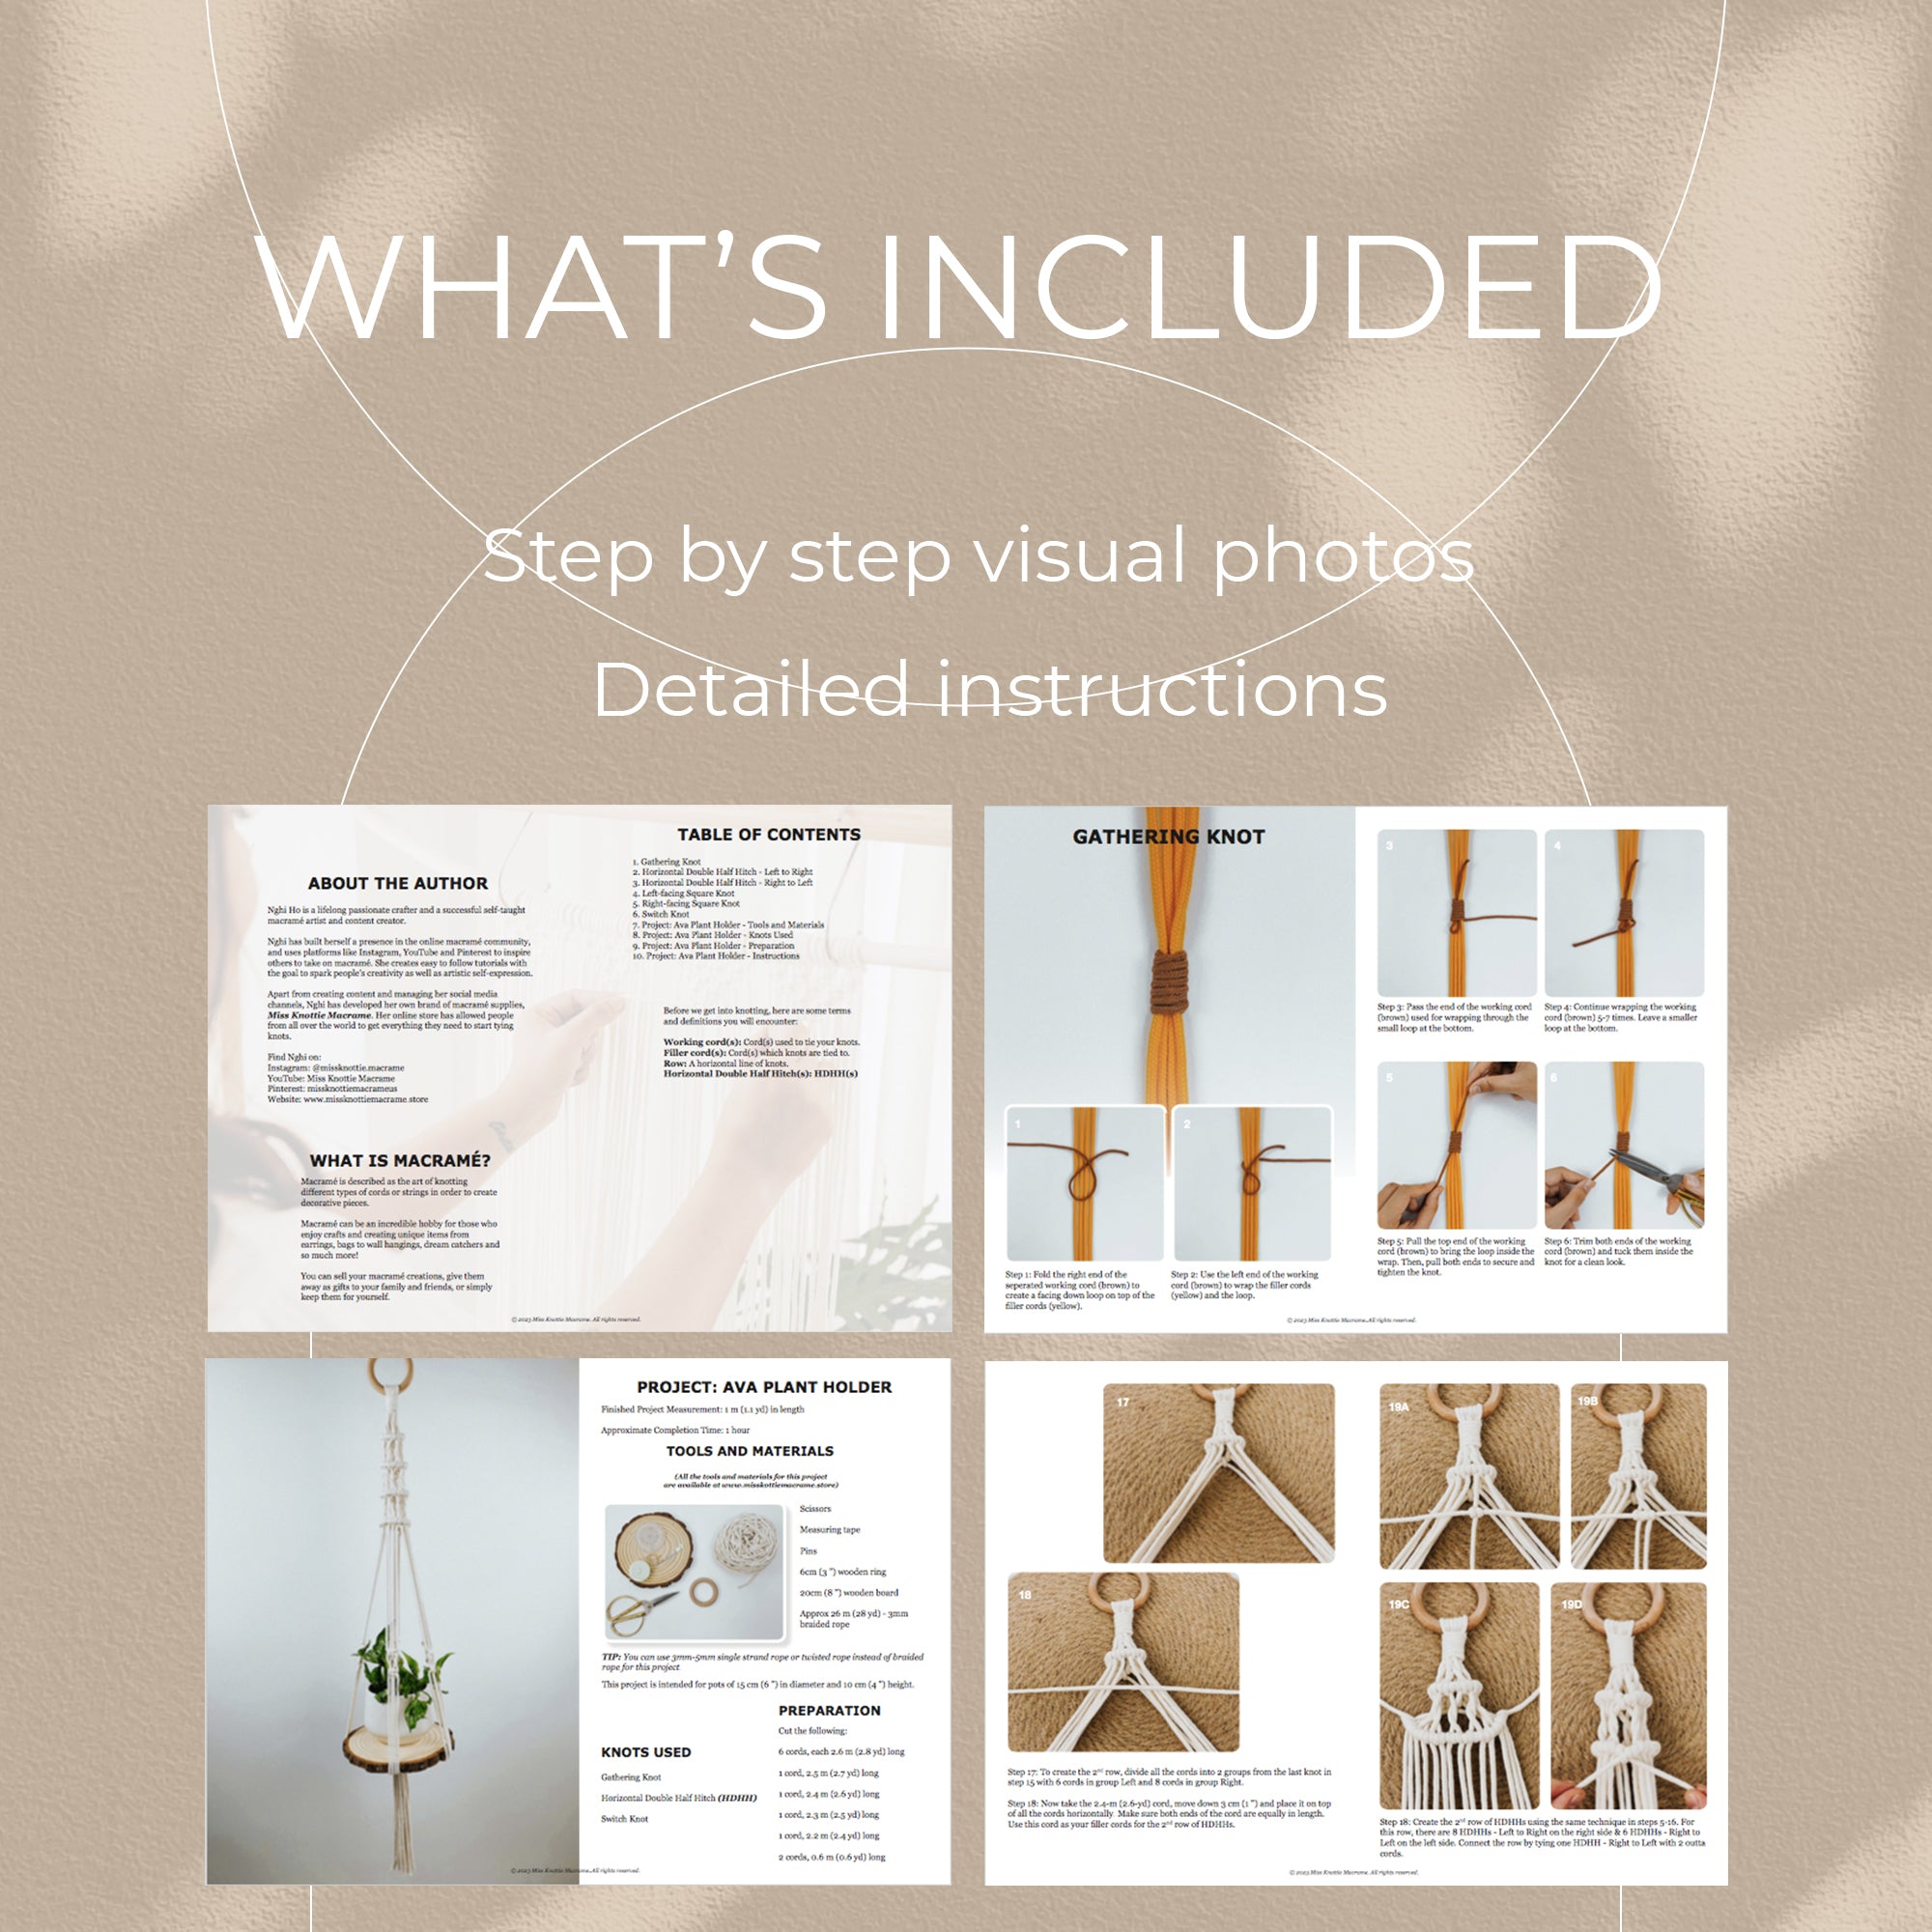 Ava Plant Holder-PDF digital y guía de nudo